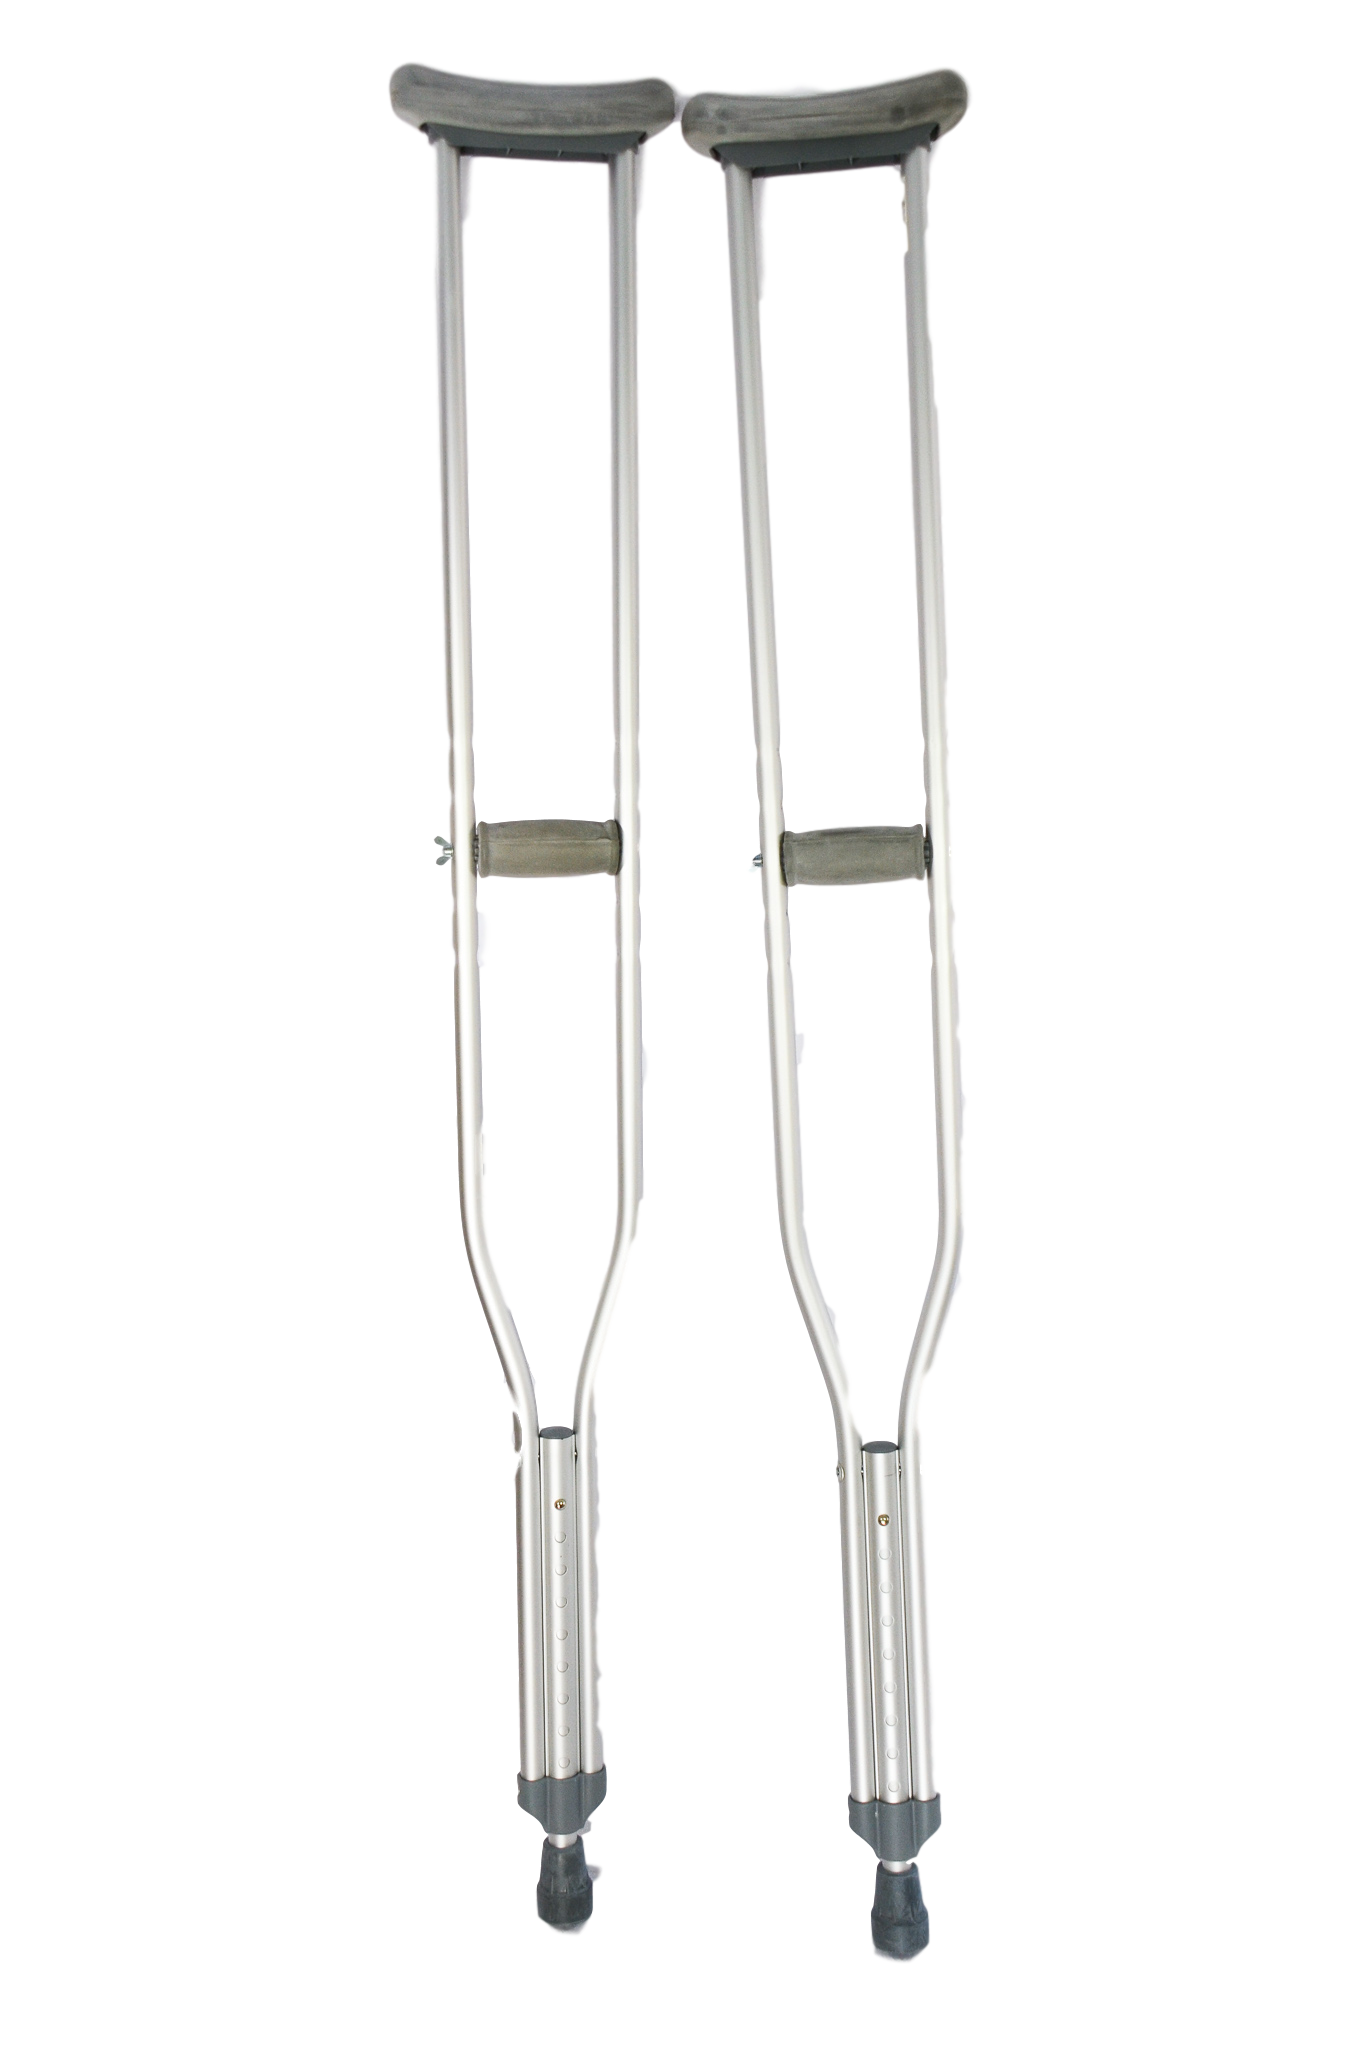 Aluminium Adjustable Crutches